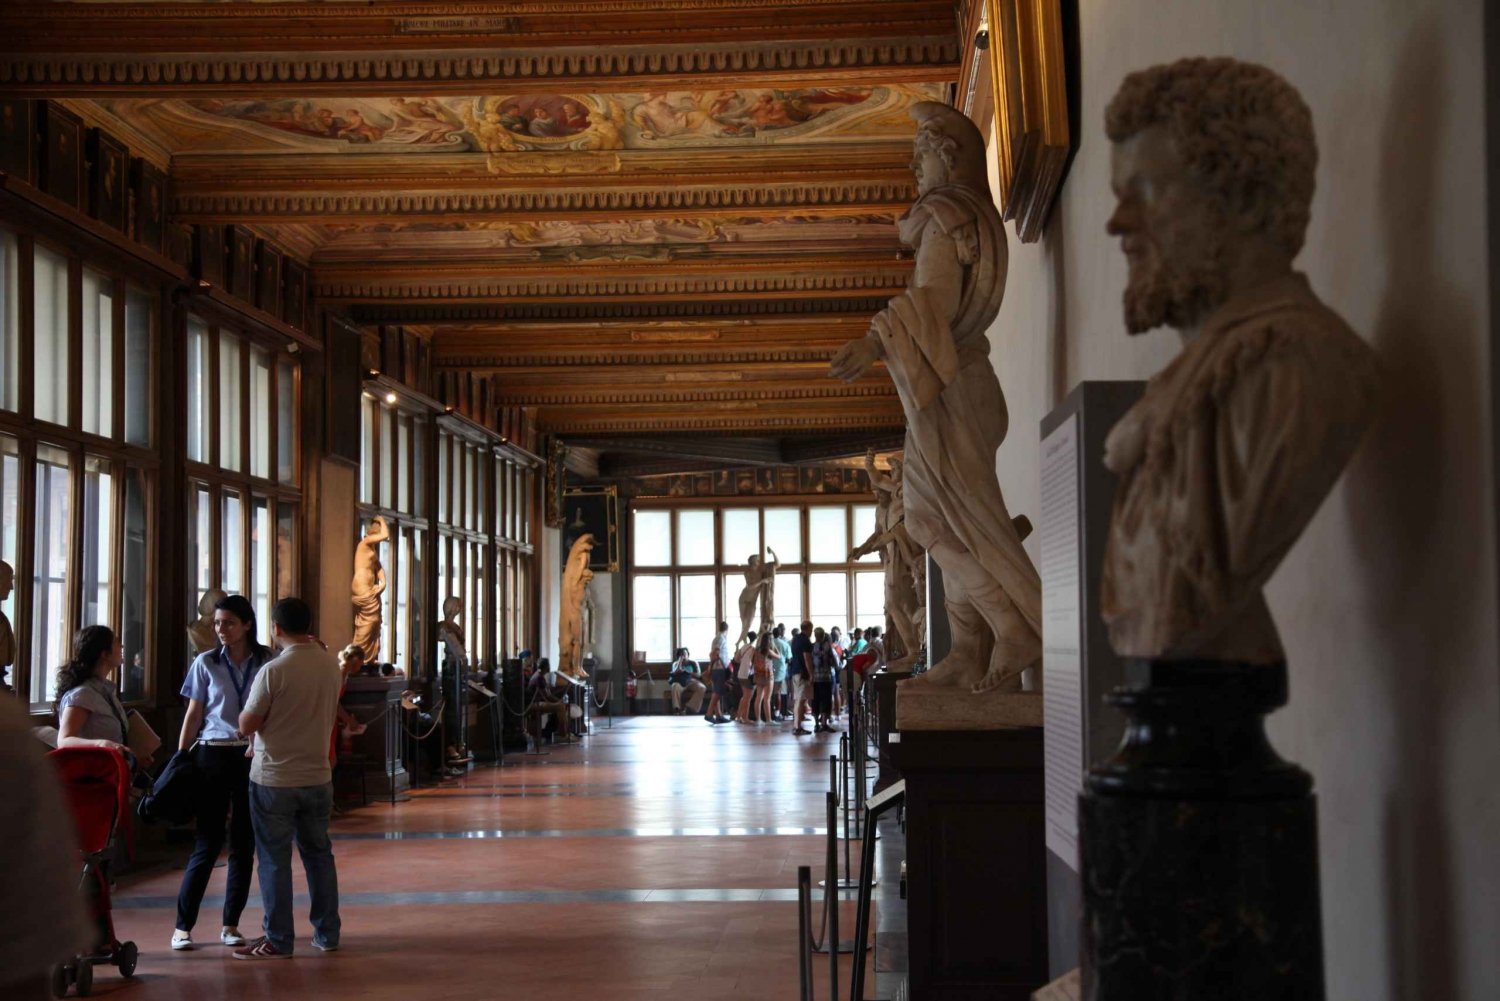 Florença: Tour rápido da Galeria Uffizi em pequenos grupos